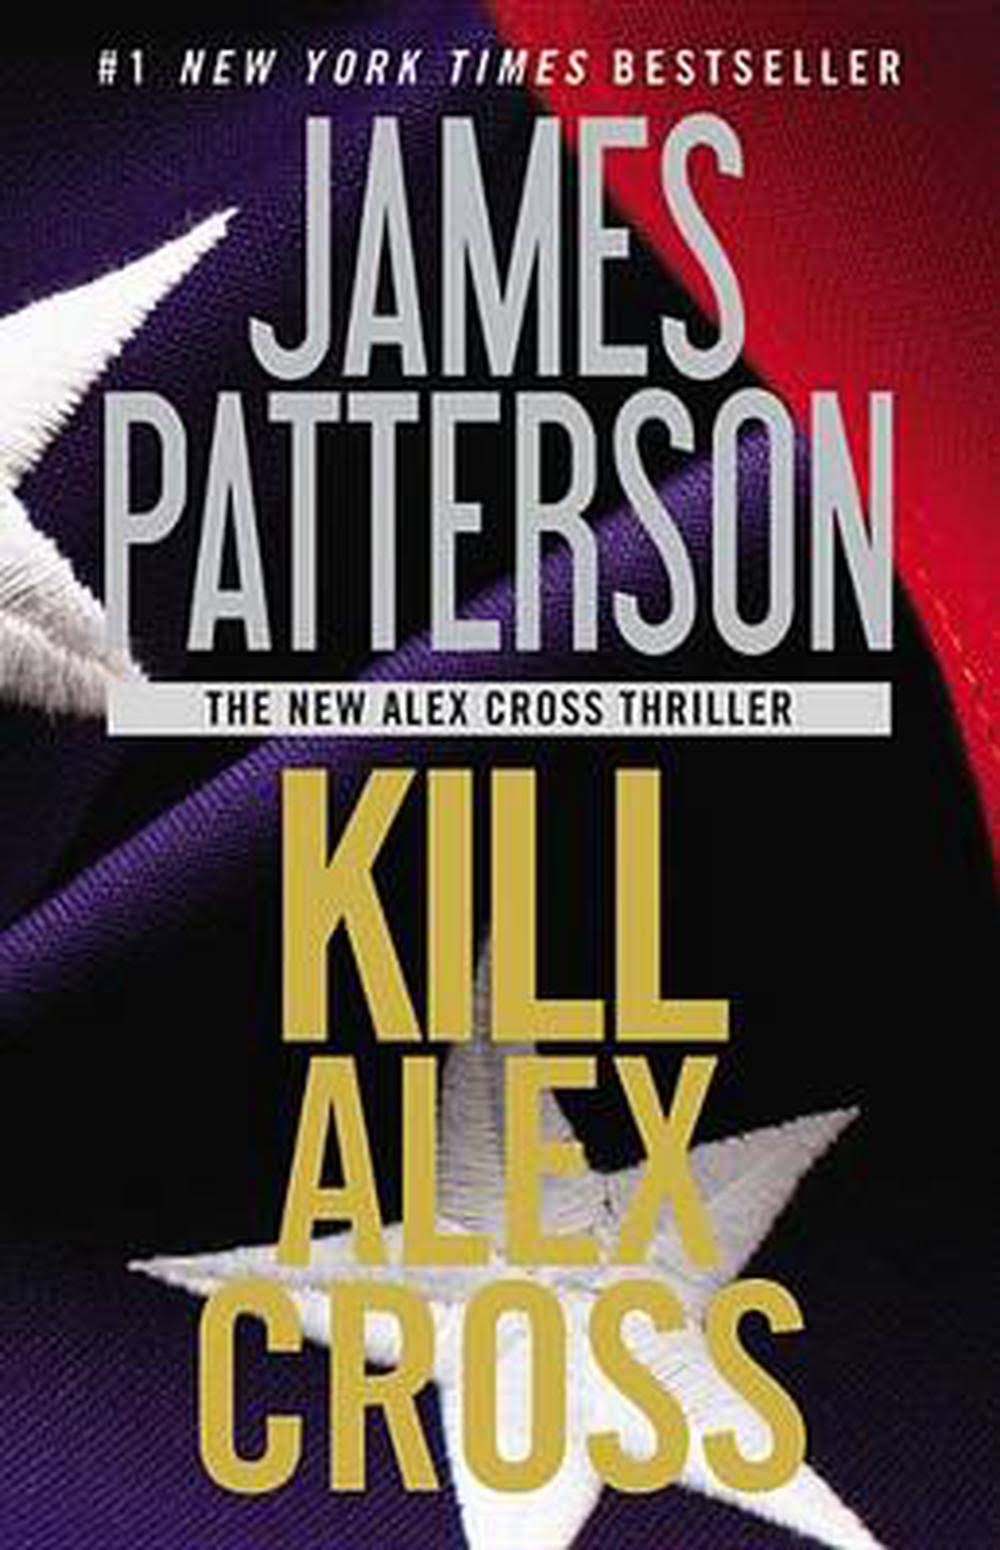 Kill Alex Cross [Book]